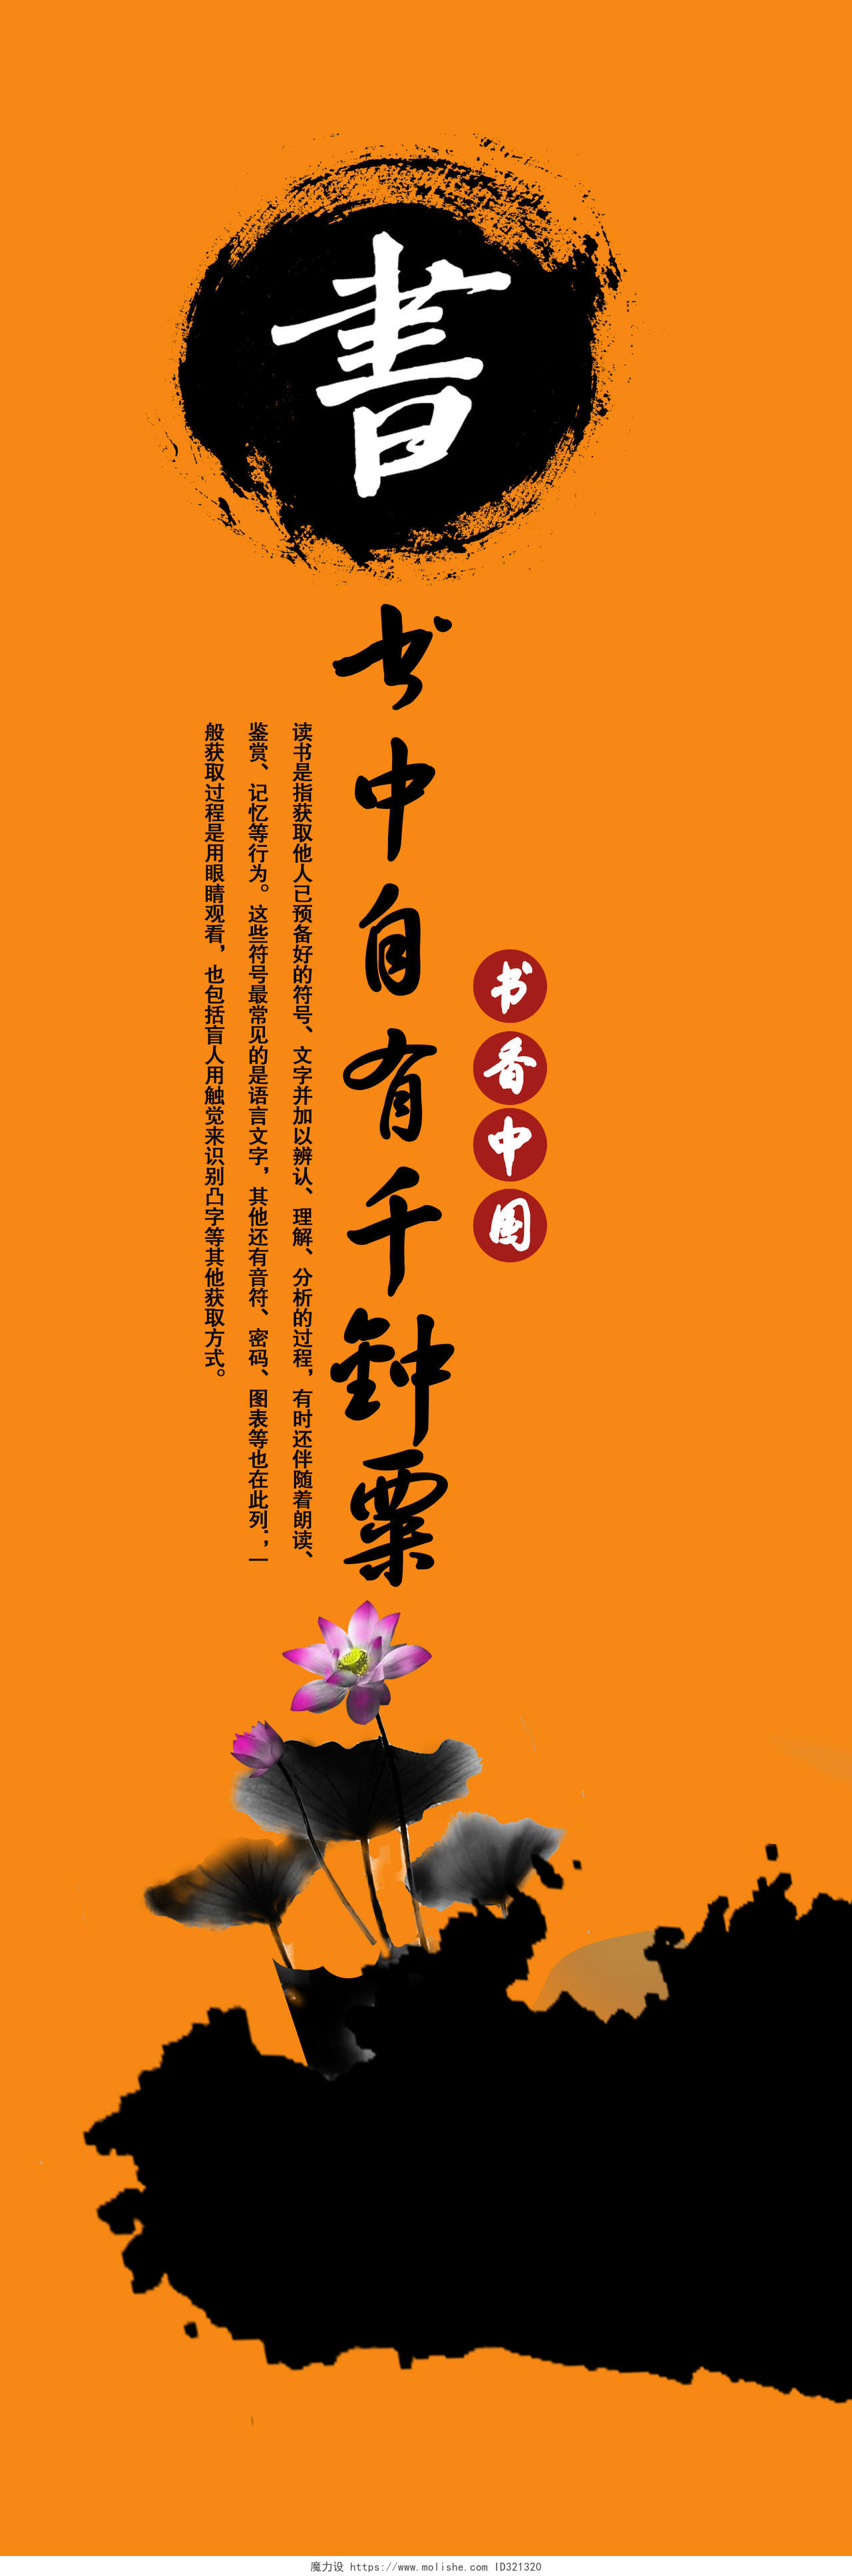 读书分享中国风书香中国梦读书阅读文化4联画挂画海报展板